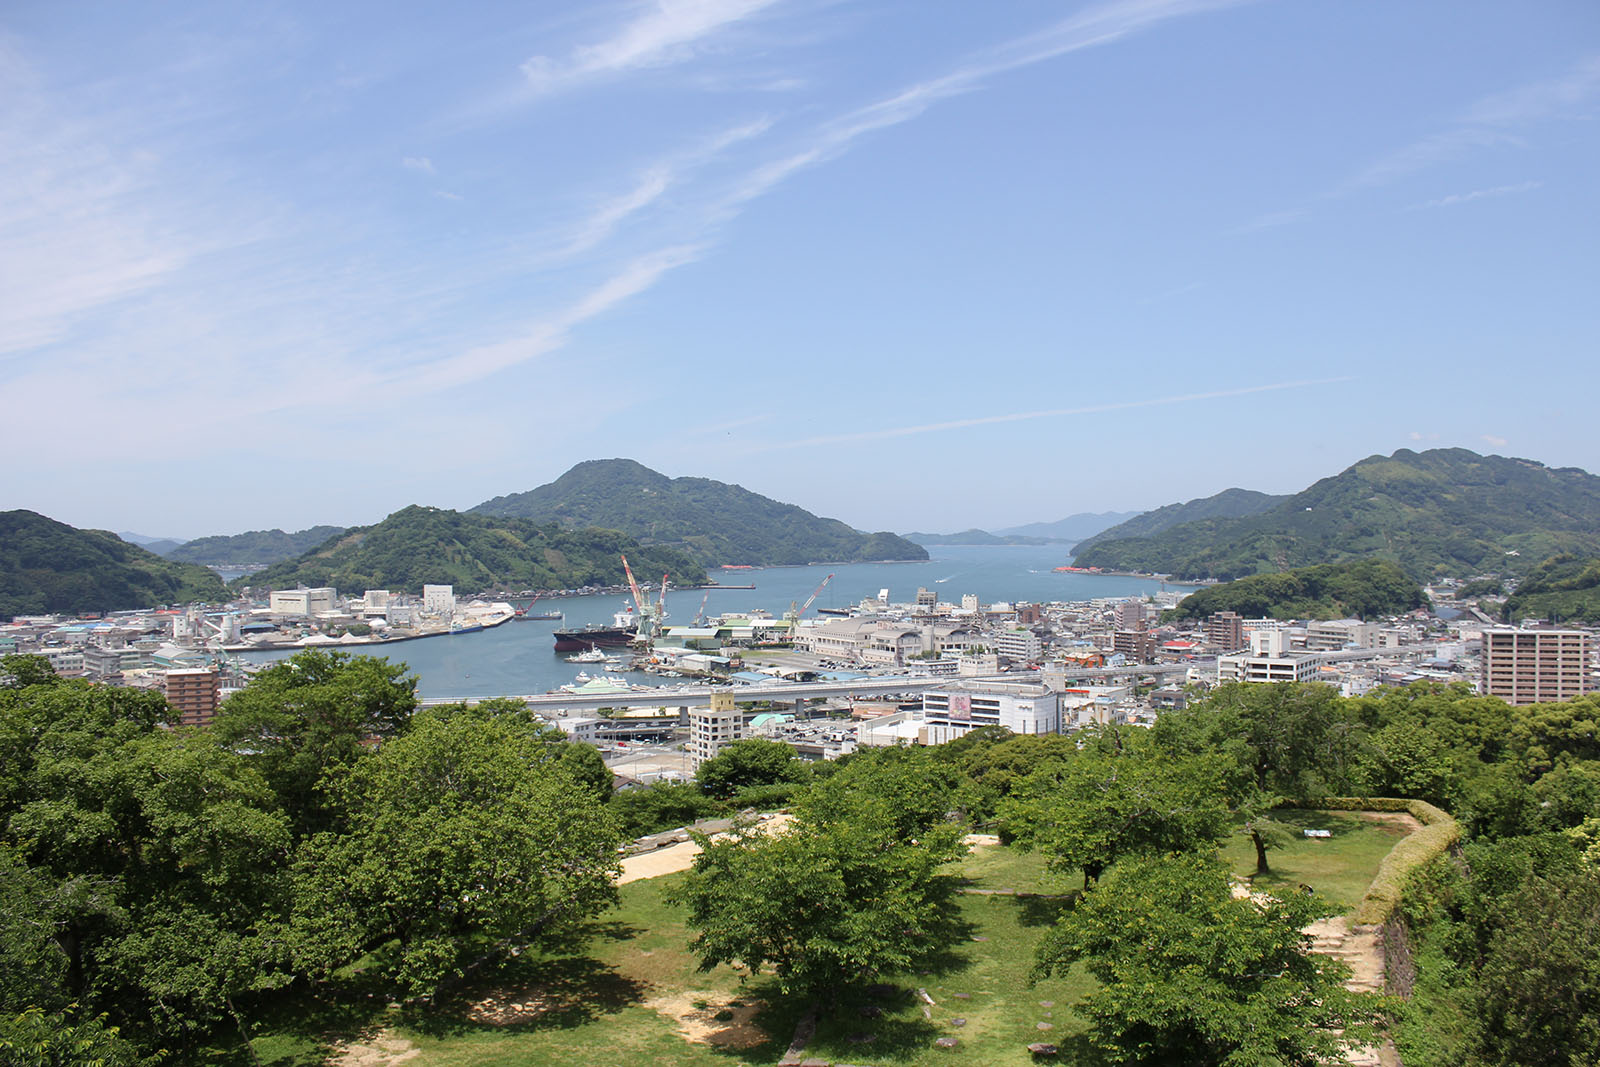 宇和島城からの景色